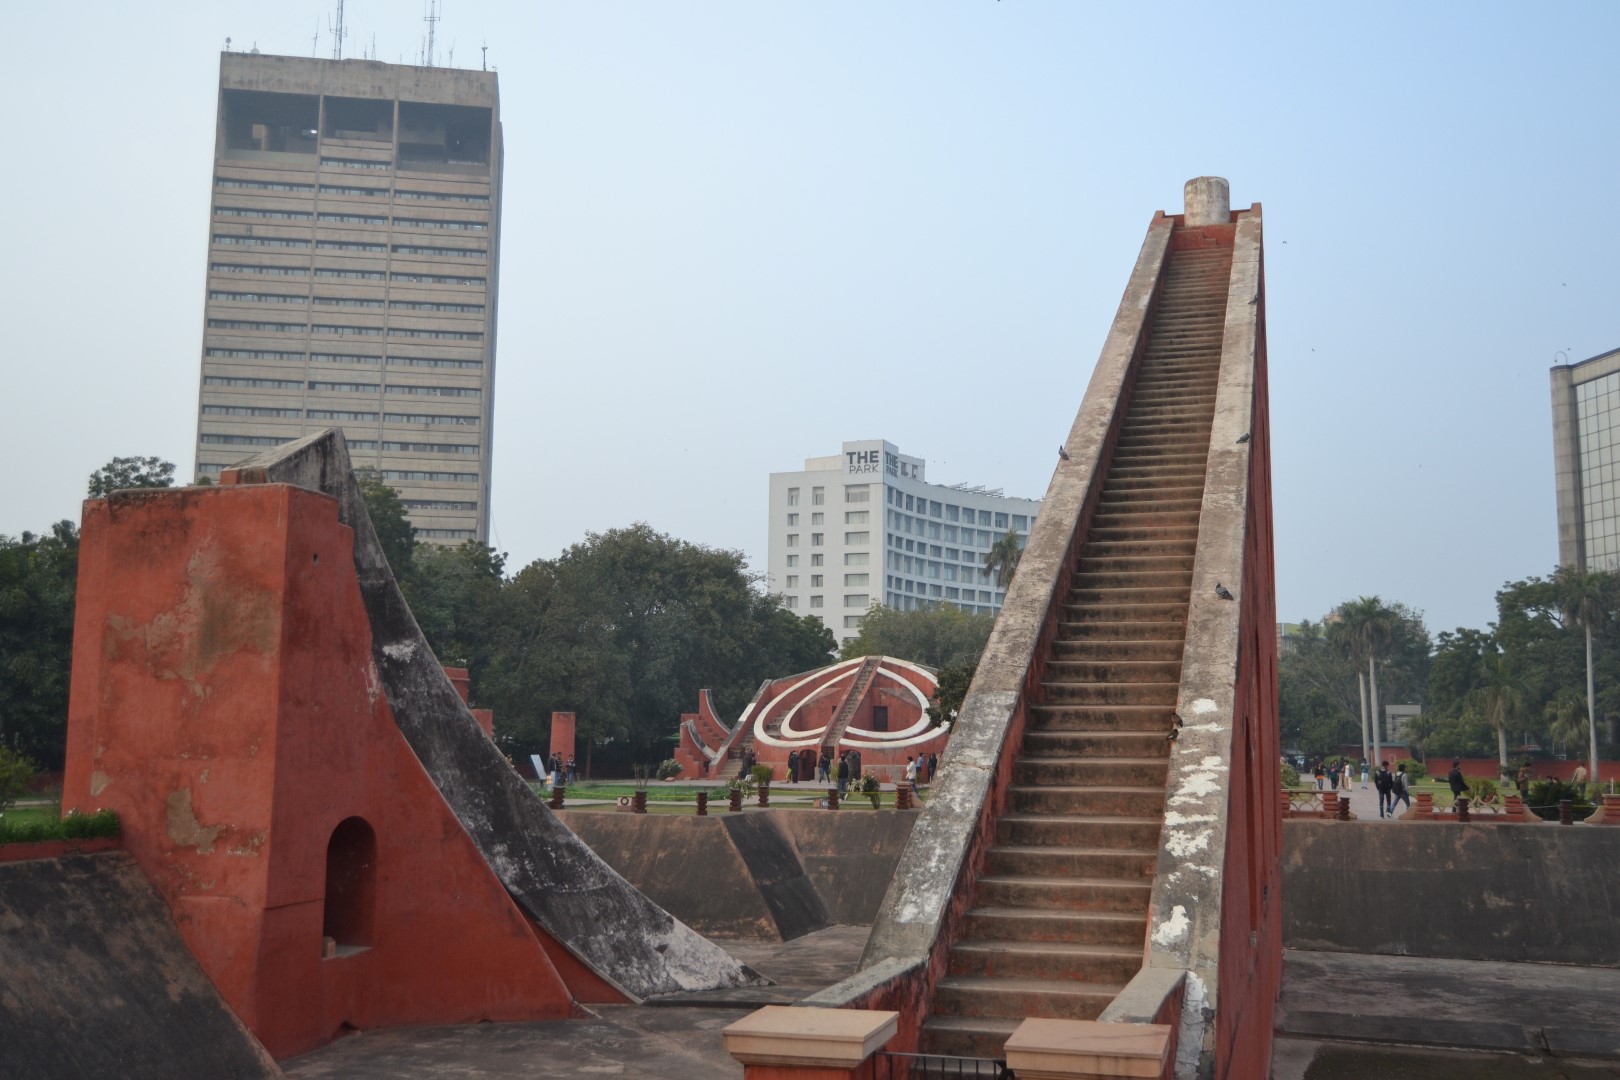 Jantar Mantar, New Delhi